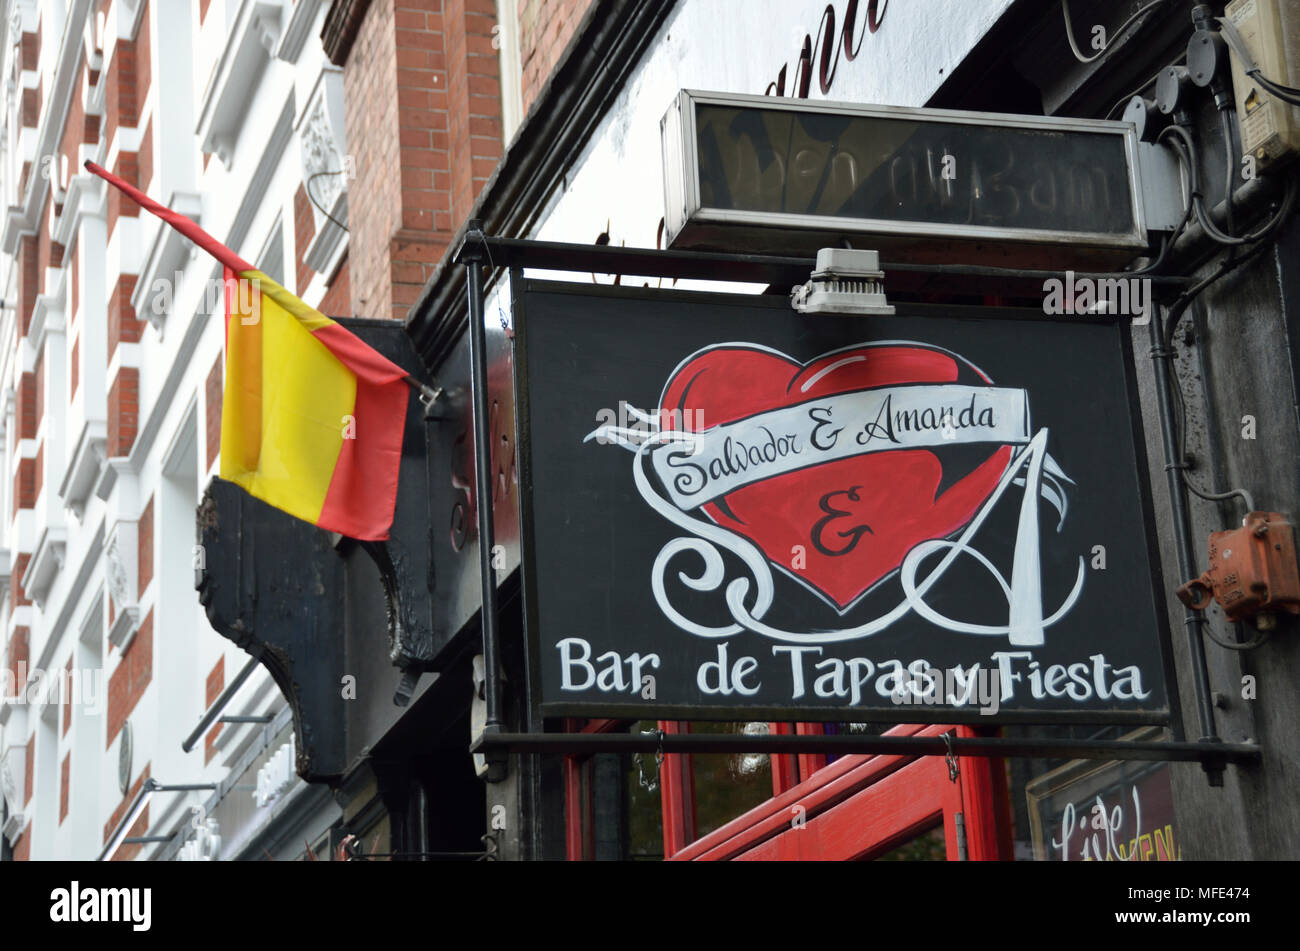 Salvador e Amanda ristorante spagnolo, Covent Garden di Londra, Regno Unito. Foto Stock